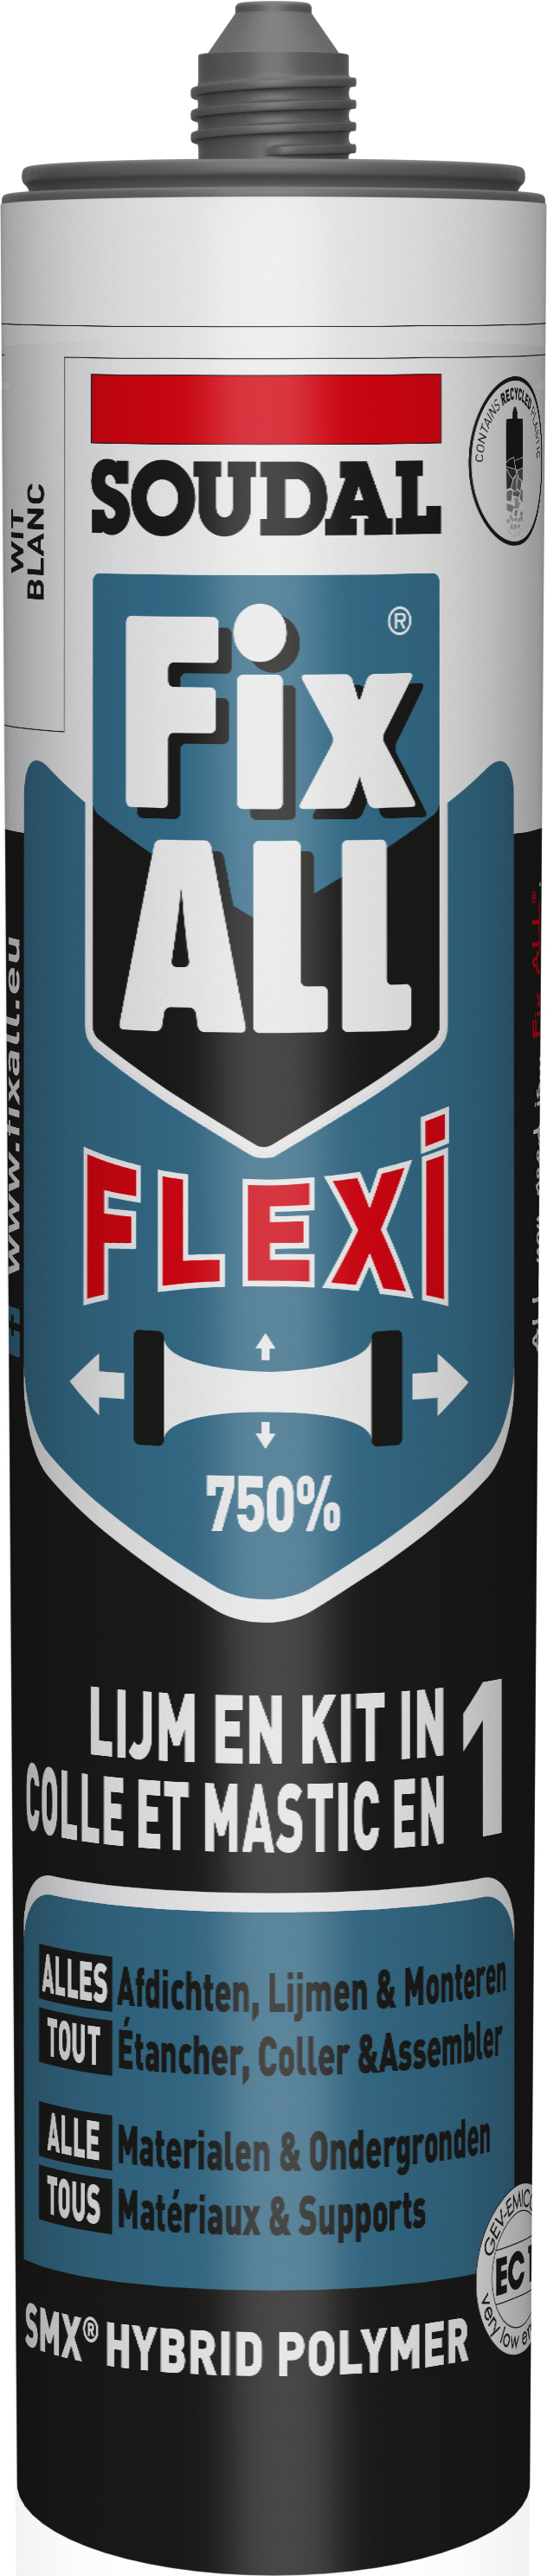 Soudal Fix-all Flexi 290 ml Grijs